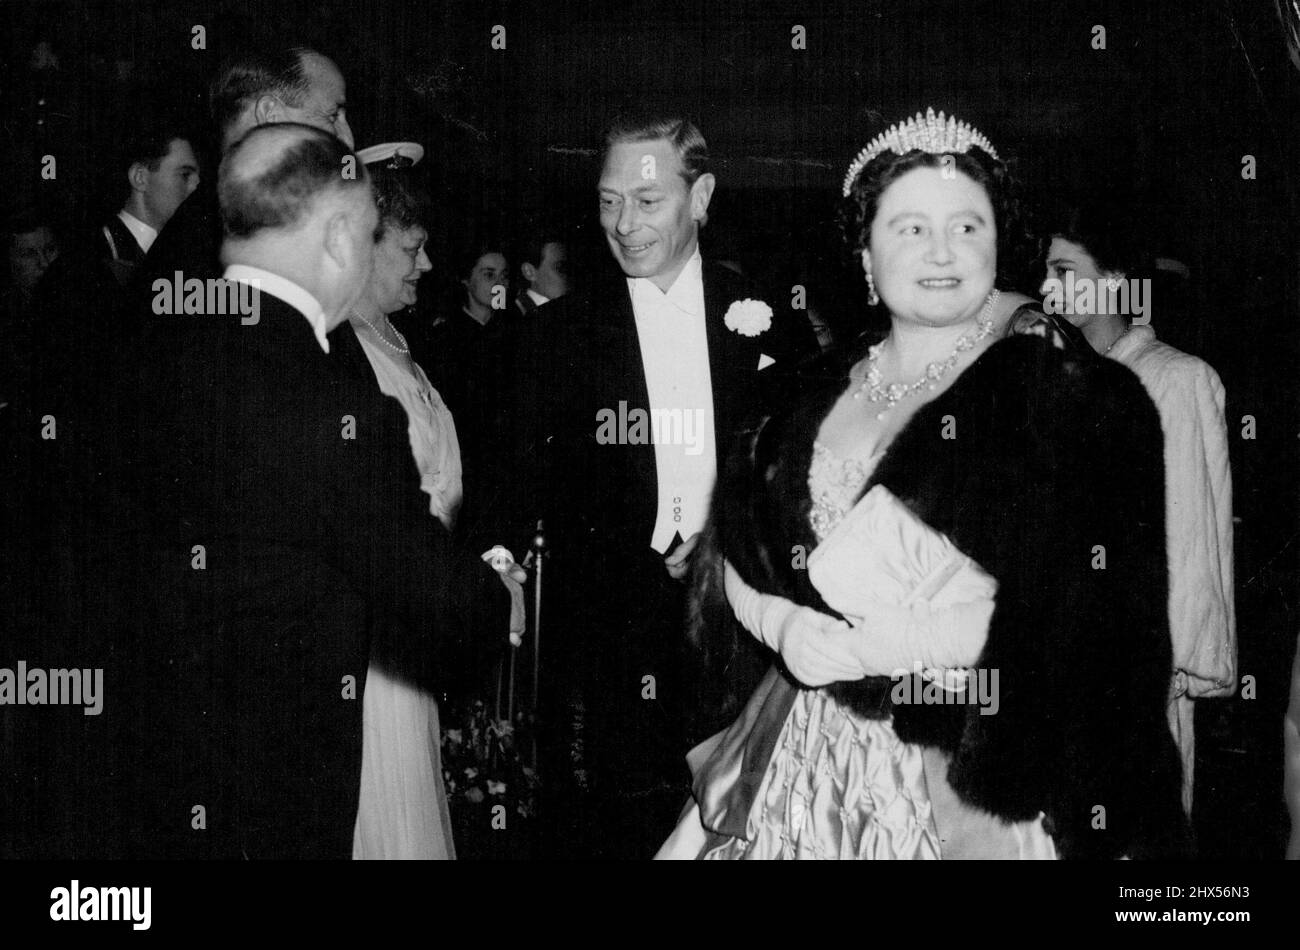 'Hamlet' Royal film Premiere -- leurs Majestés le Roi et la Reine sont accueillis à leur arrivée au Théâtre Odeon, ce soir (jeudi). La Reine porte une robe de satin d'Ivoire matelassé. La princesse Elizabeth est visible sur la droite. Leurs Majestés le Roi et la Reine ont assisté à la première mondiale de la version cinématographique de 'Hamlet' de Sir Laurence Olivier, ce soir (jeudi) à l'Odeon, Leicester Square, Londres. Le film, qui a coûté deux villes £500 000 à faire, a été produit et réalisé par Sir Laurence, qui joue le rôle de titre. Il a occupé Denham studio six mois pendant la fabrication. 06 mai 1948. Banque D'Images